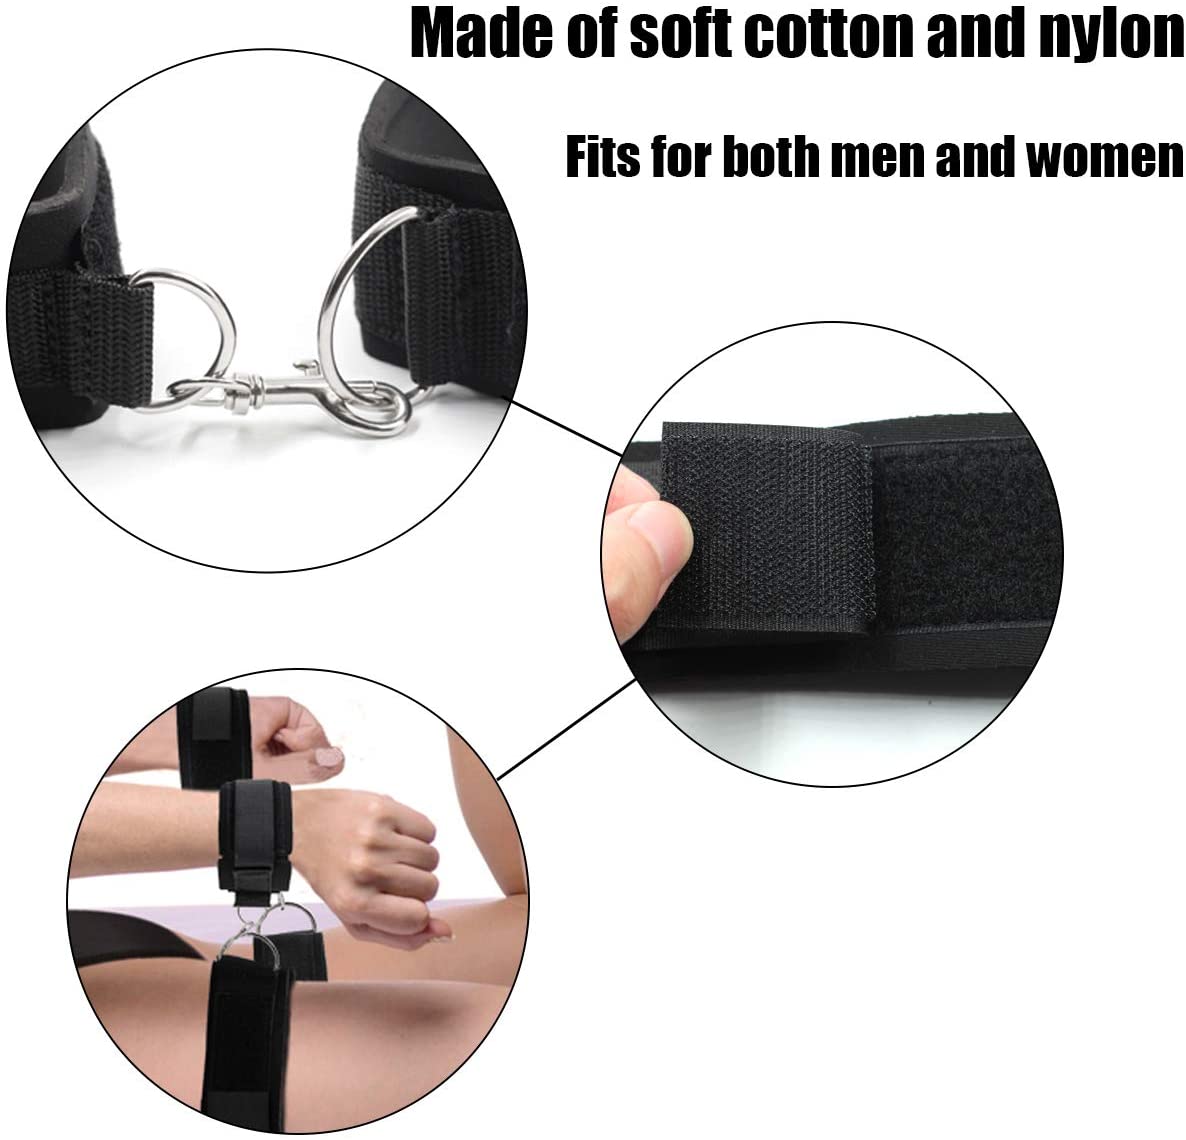 Thigh Wrist Cuffs Restraints Handcuffs BDSM Sex Toys for Women Leg Straps Tie Set Bondage for Couples SM Games